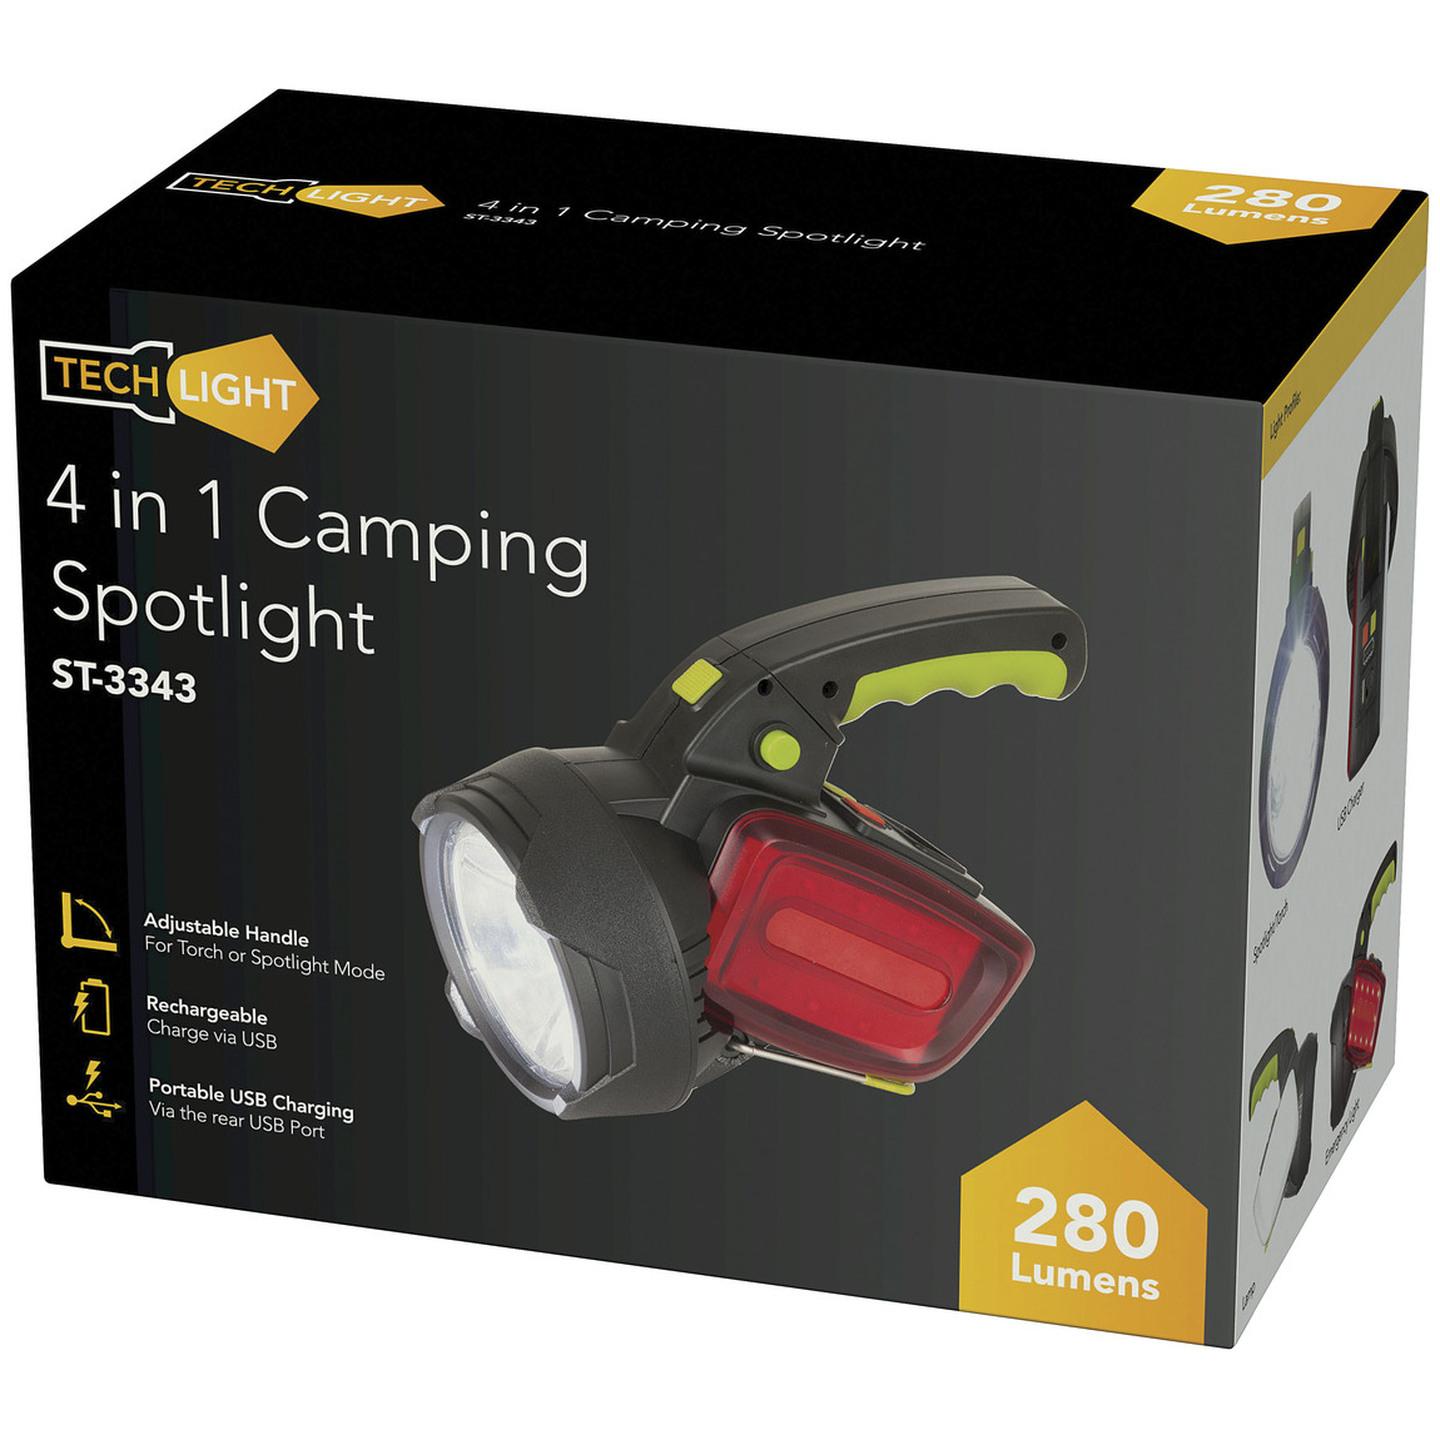 4 in 1 Camping Spotlight